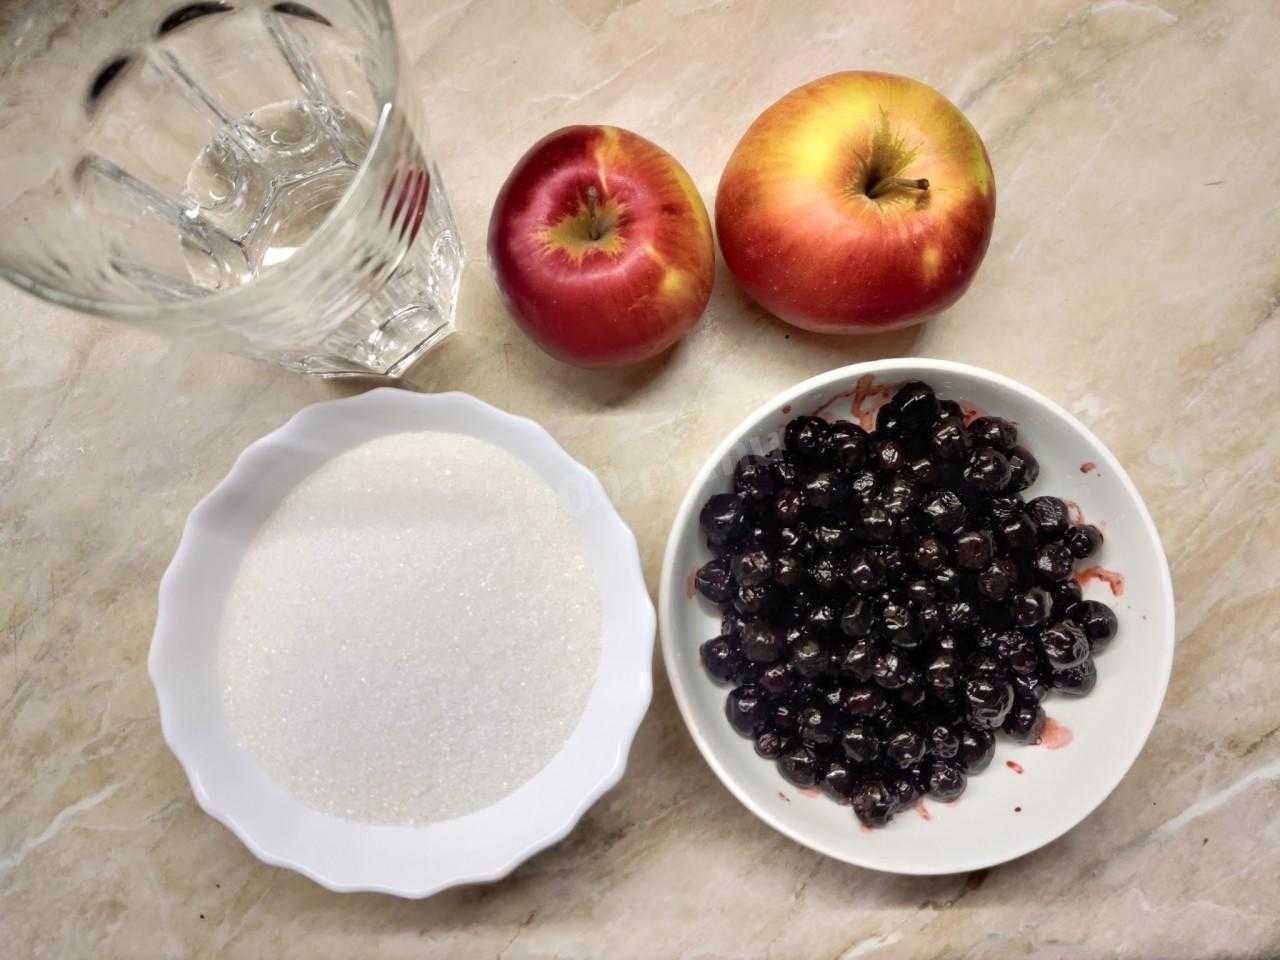 Заготовка черноплодной рябины на зиму: лучшие рецепты